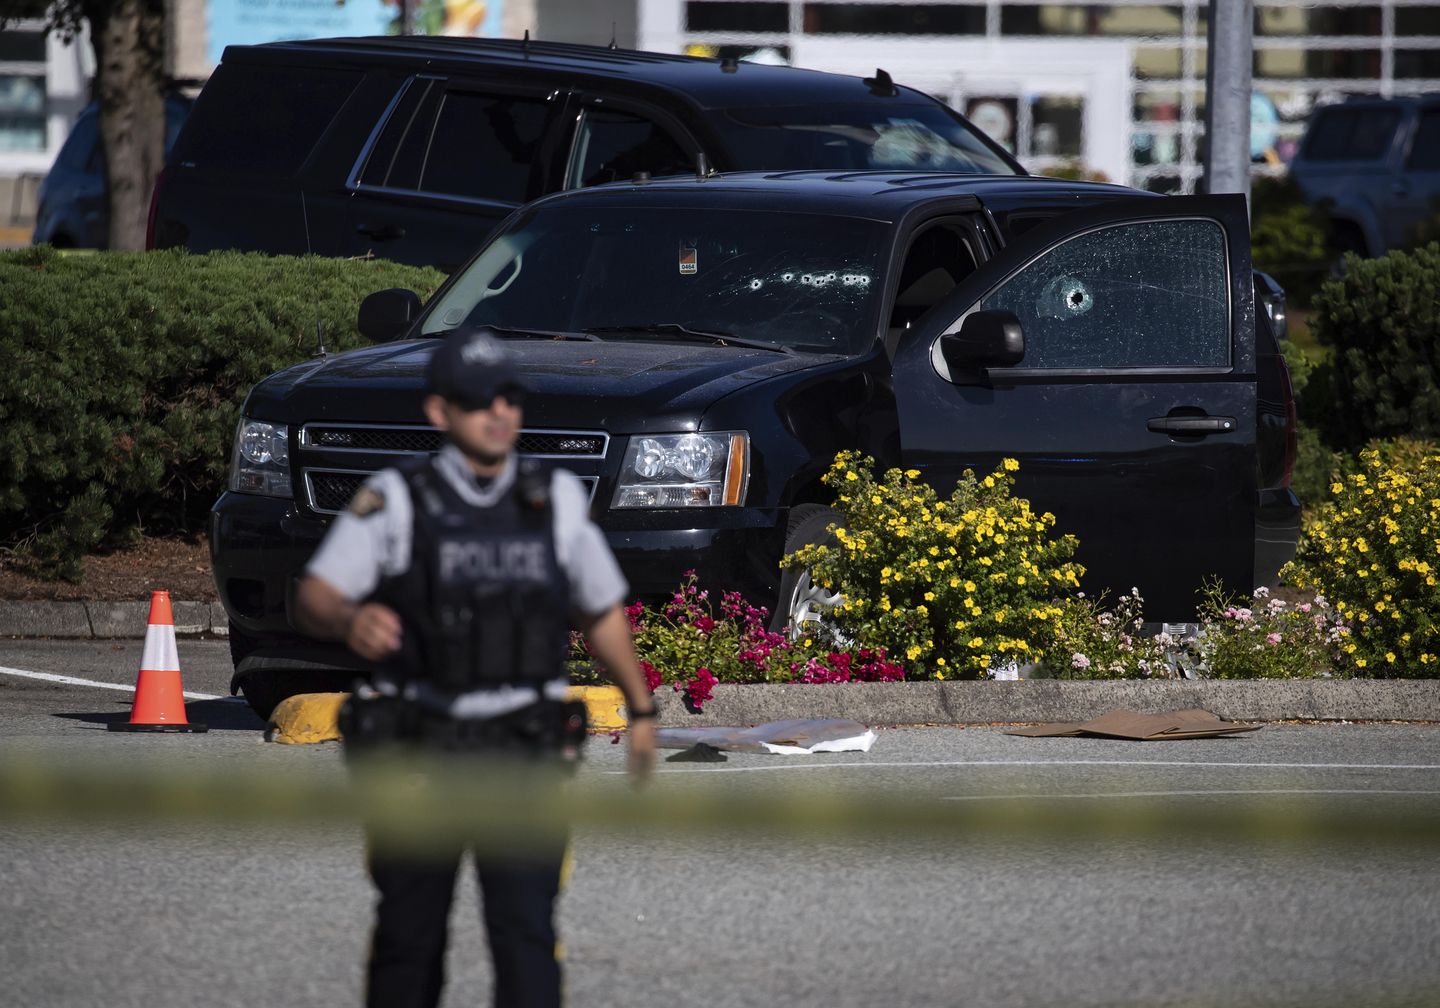 Silahlı adam Kanadalı evsizleri hedef alan saldırılarda 2 kişiyi öldürdü